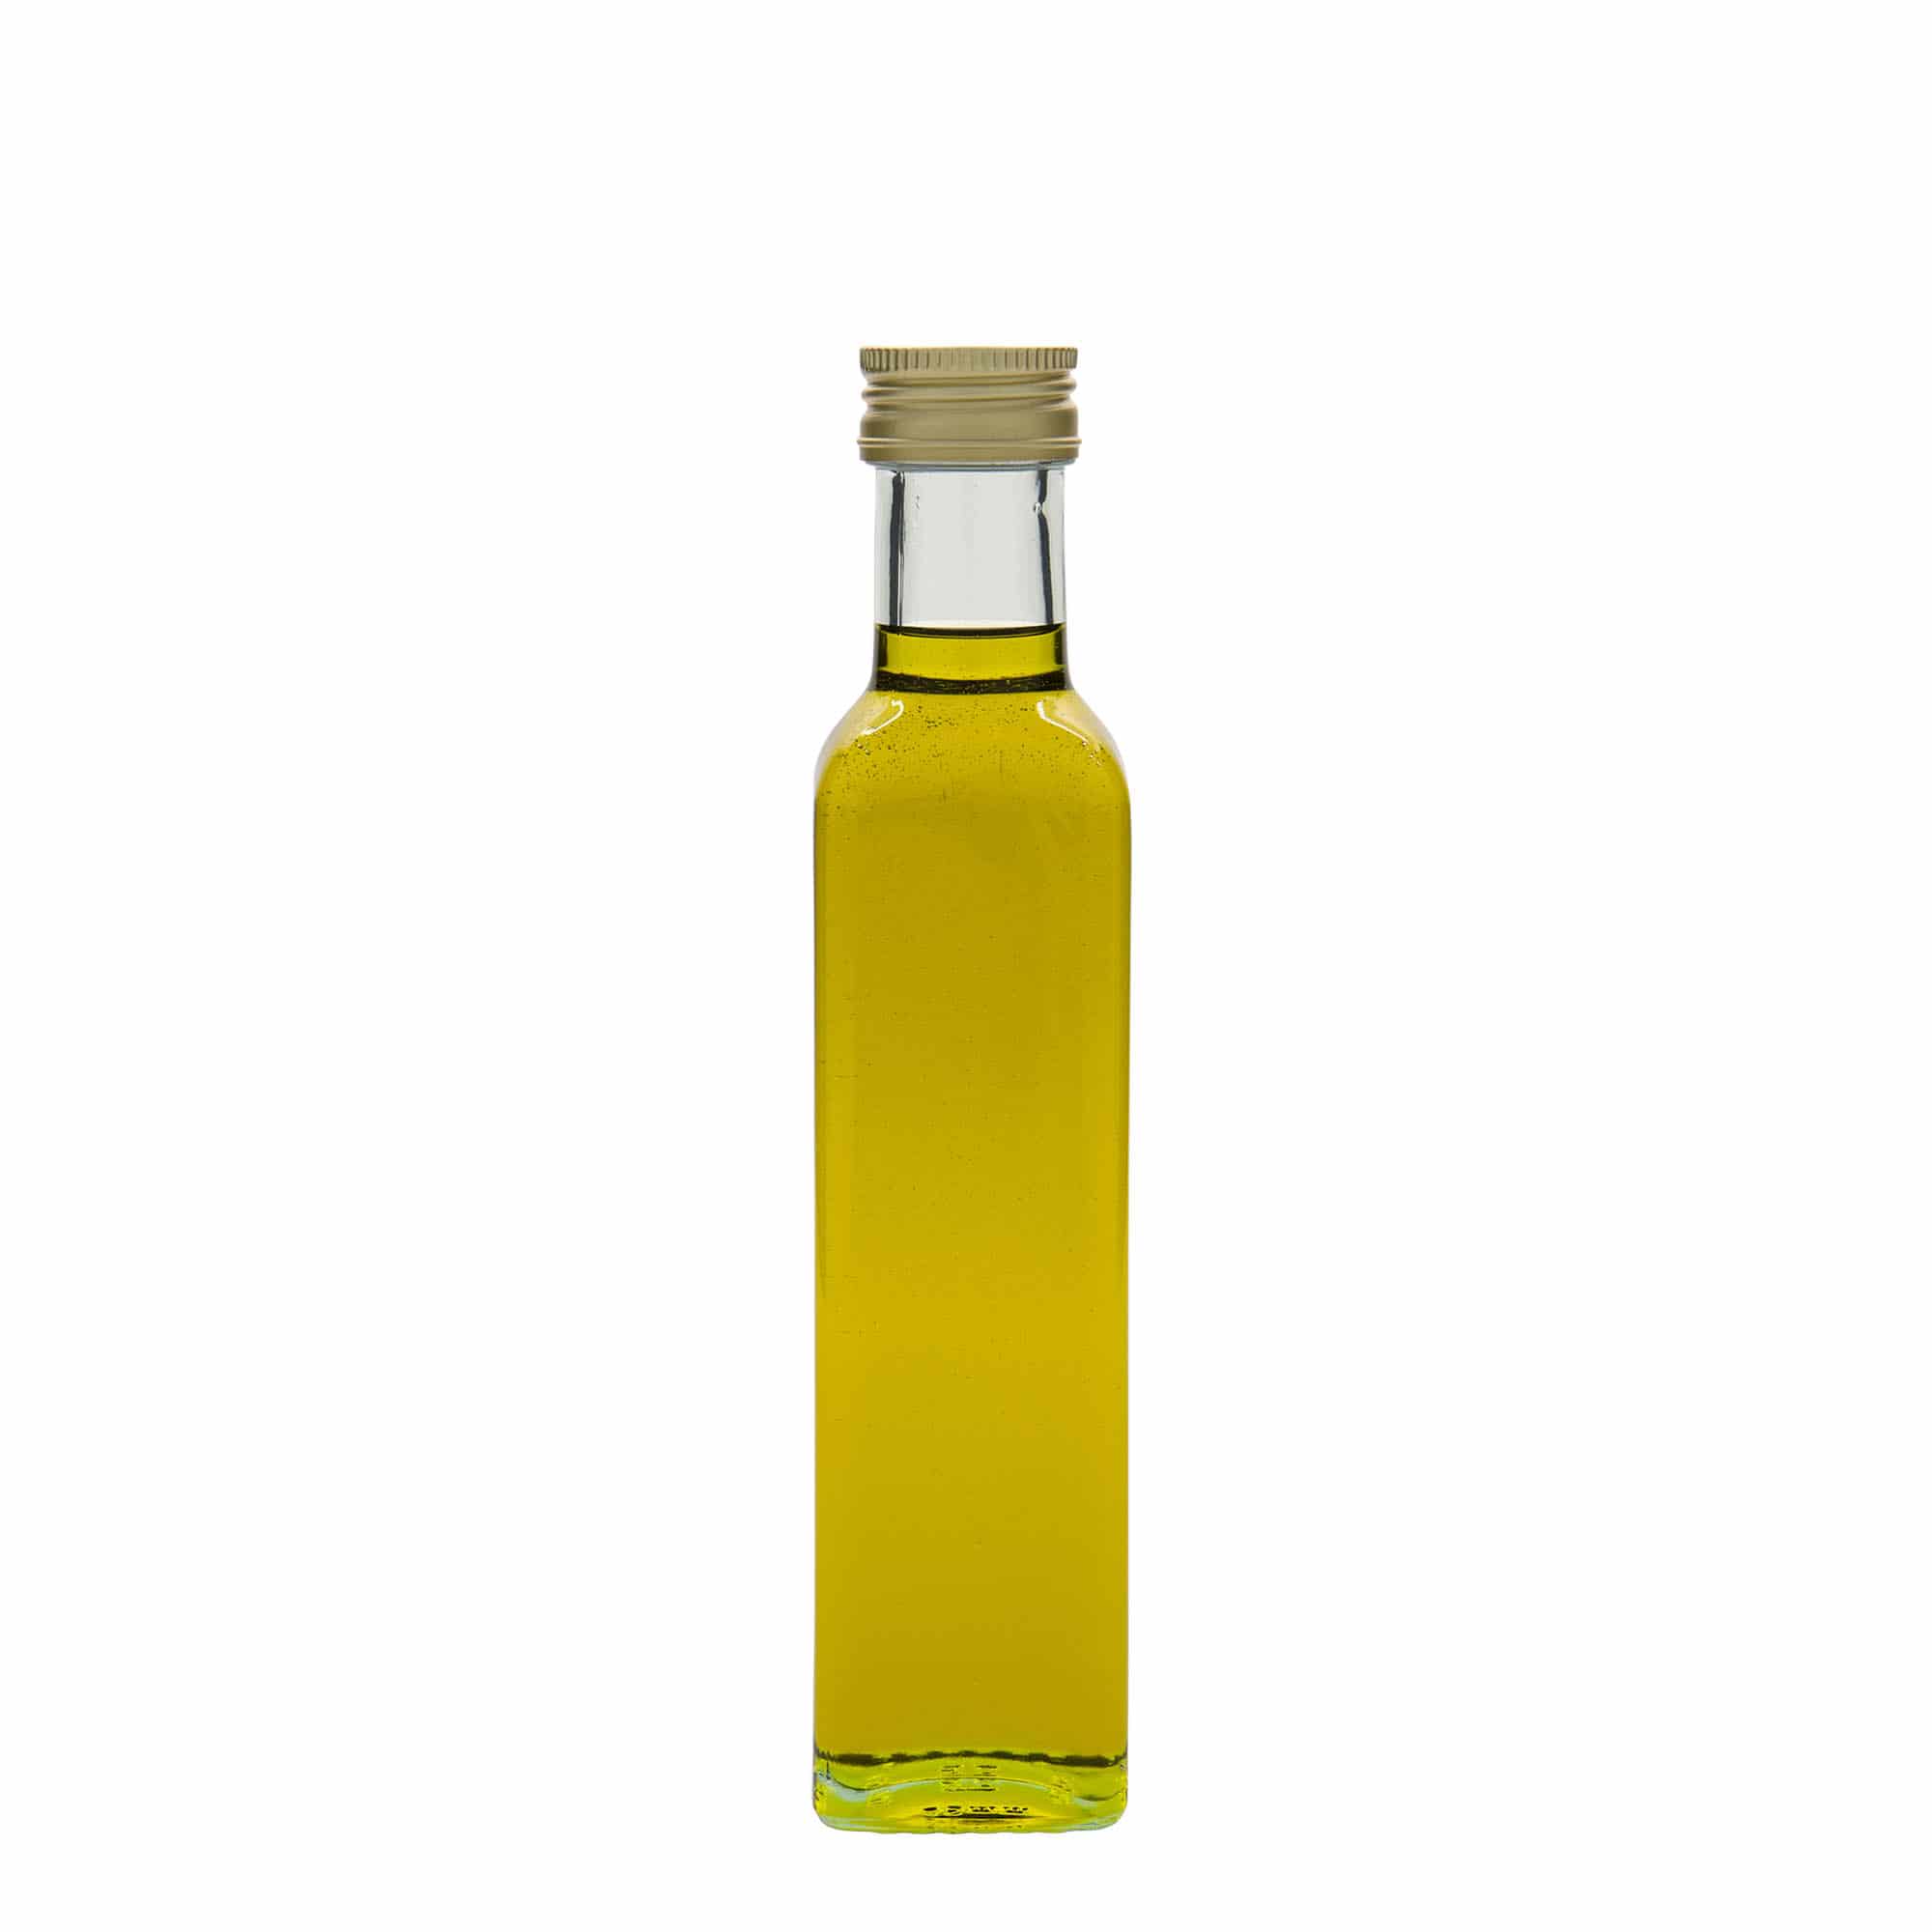 Skleněná lahev 250 ml 'Marasca', čtvercová, uzávěr: PP 31,5